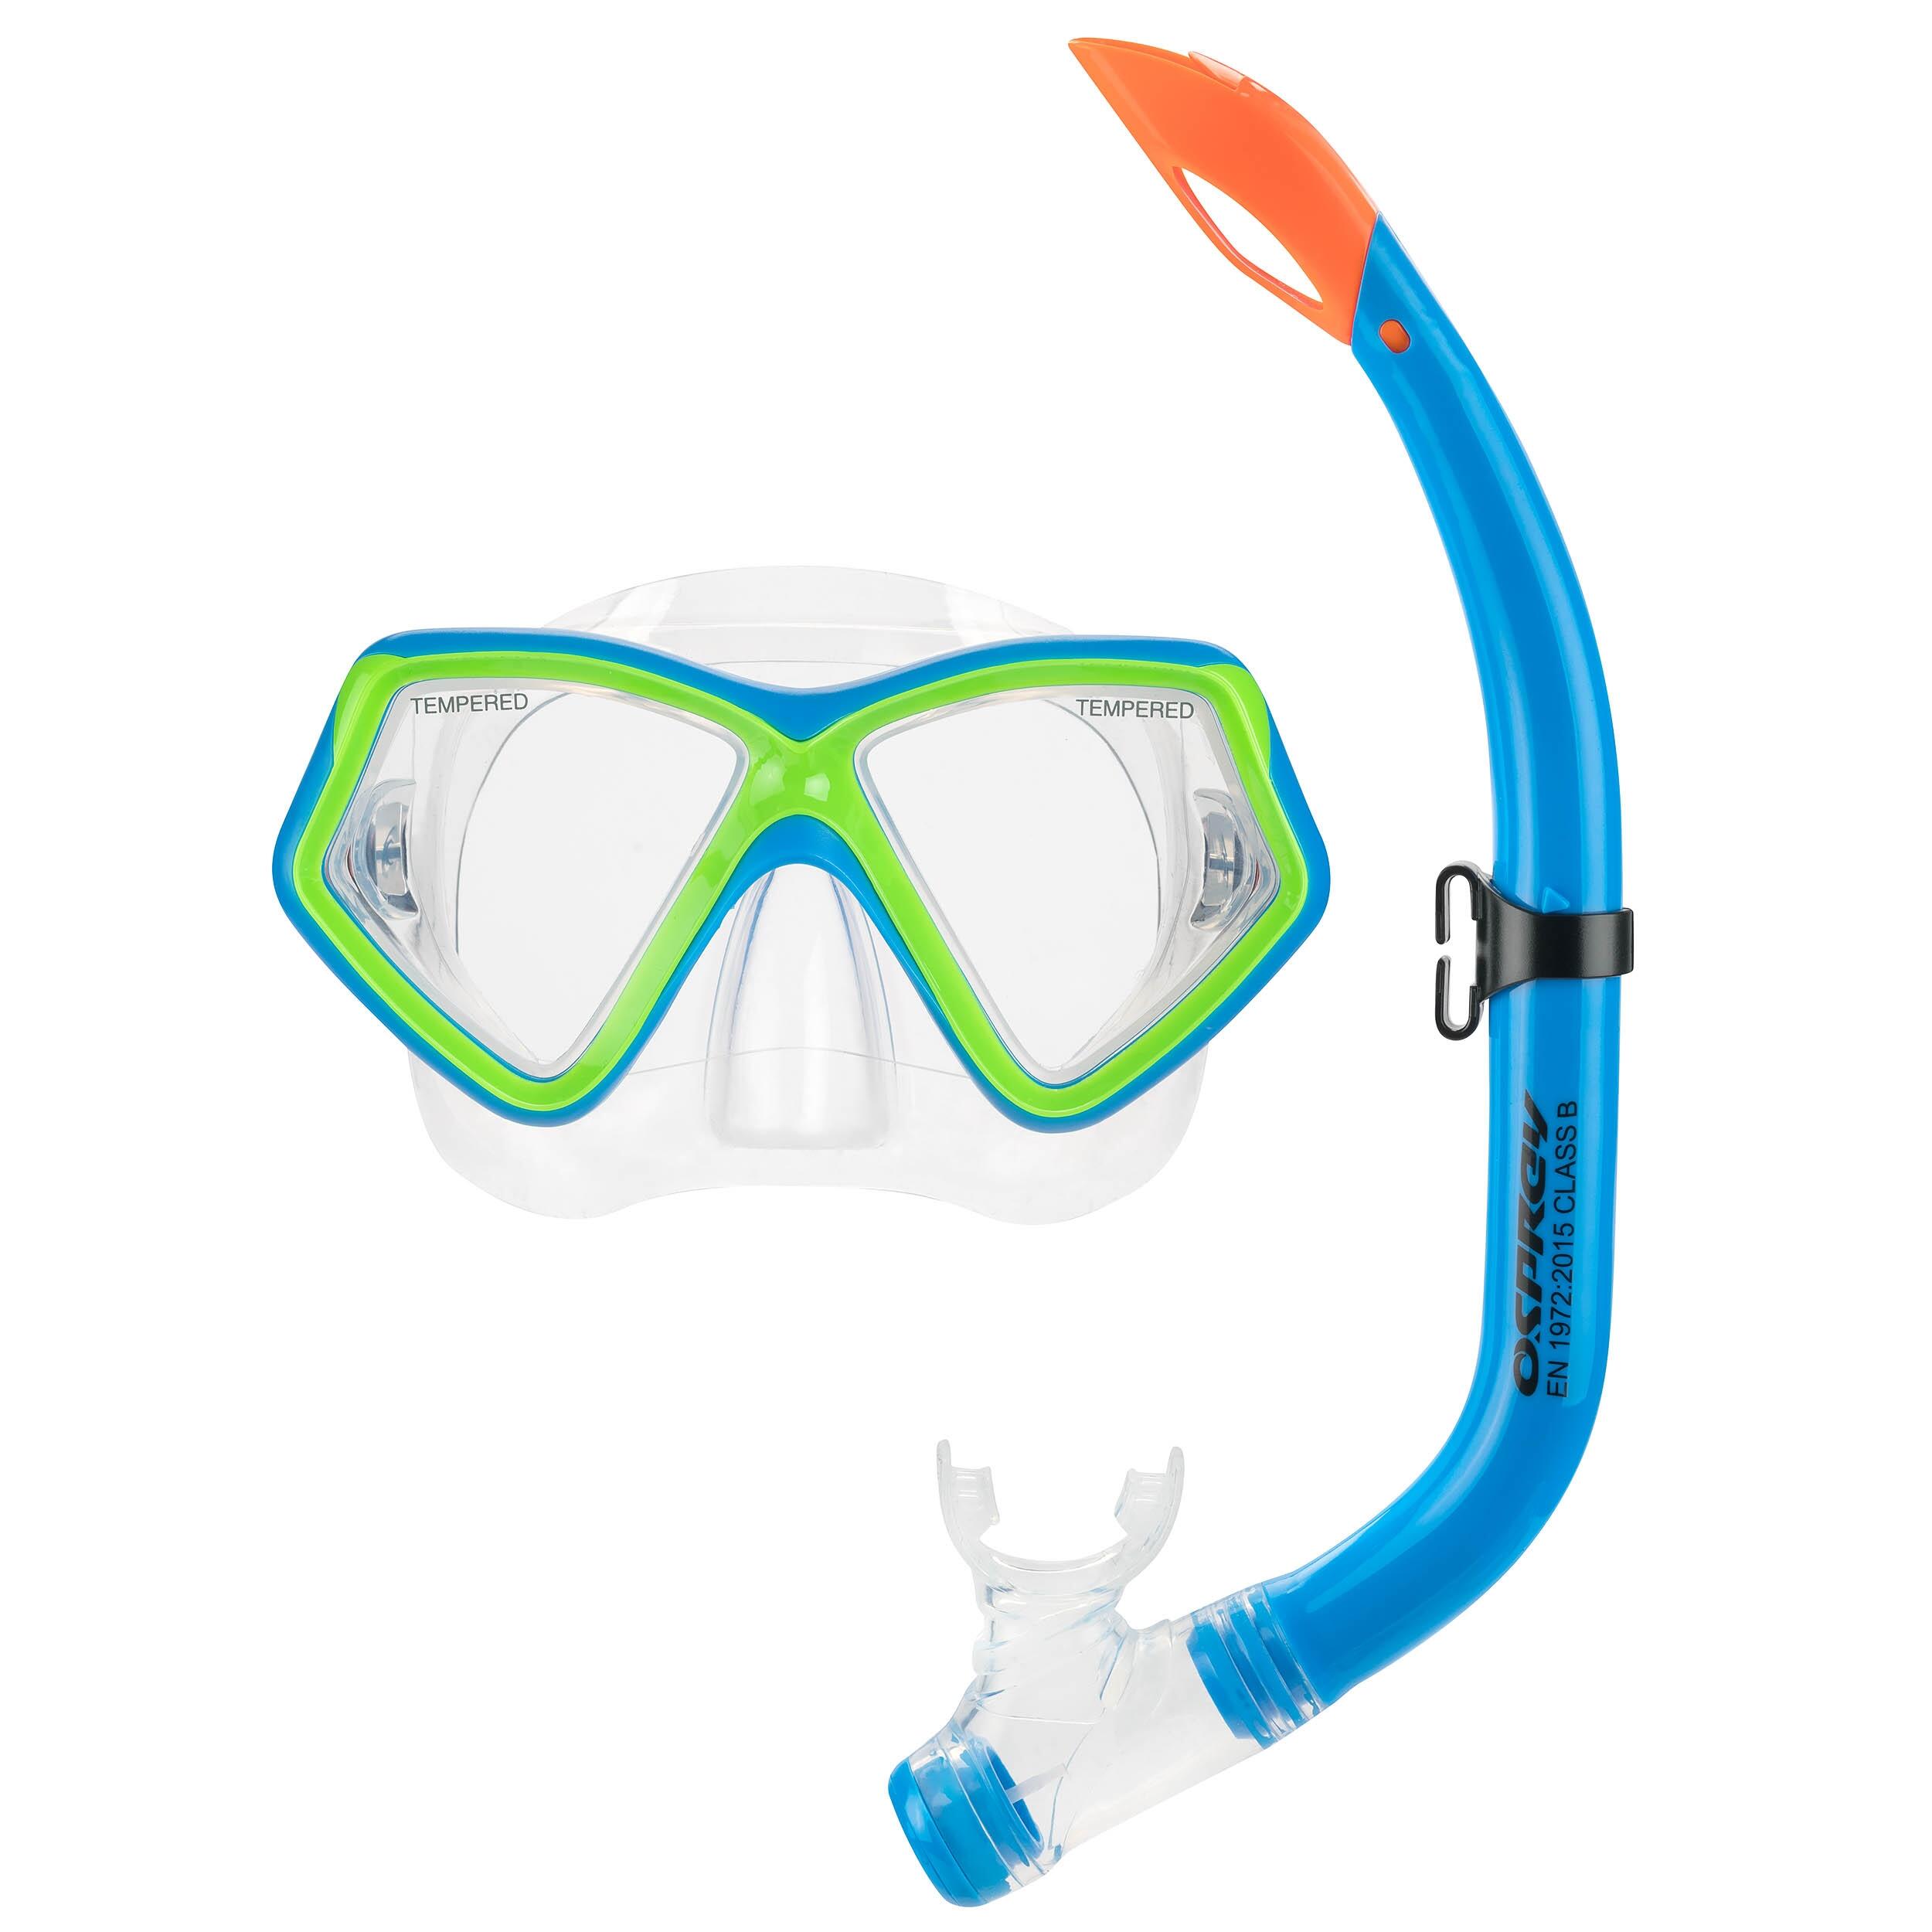 OSPREY ACTION SPORTS Osprey Kids Mask and Snorkel Set, Tempered Lens Snorkelling Set